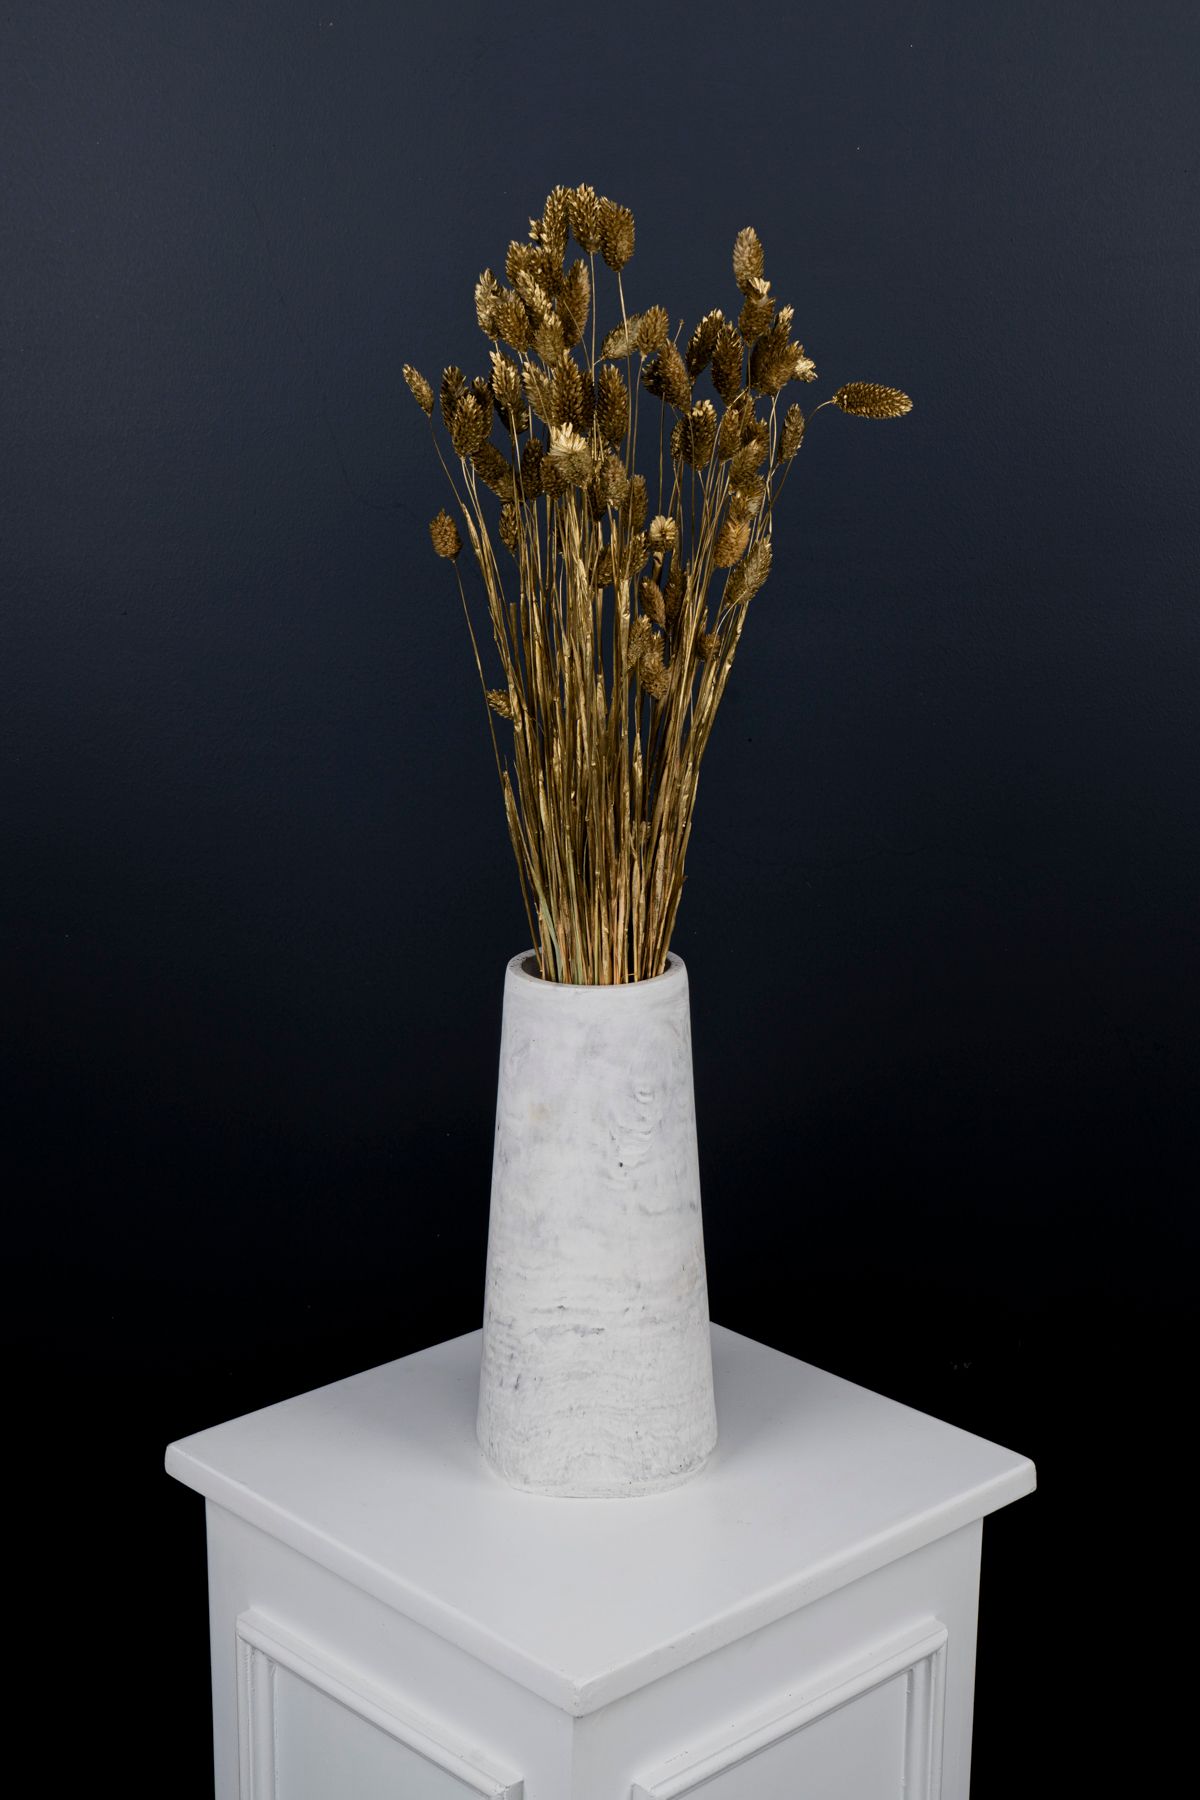 Kuru Çiçek Deposu Kuş otu Gold Kuru Çiçek Yeni Yıl Hediyesi 50 cm